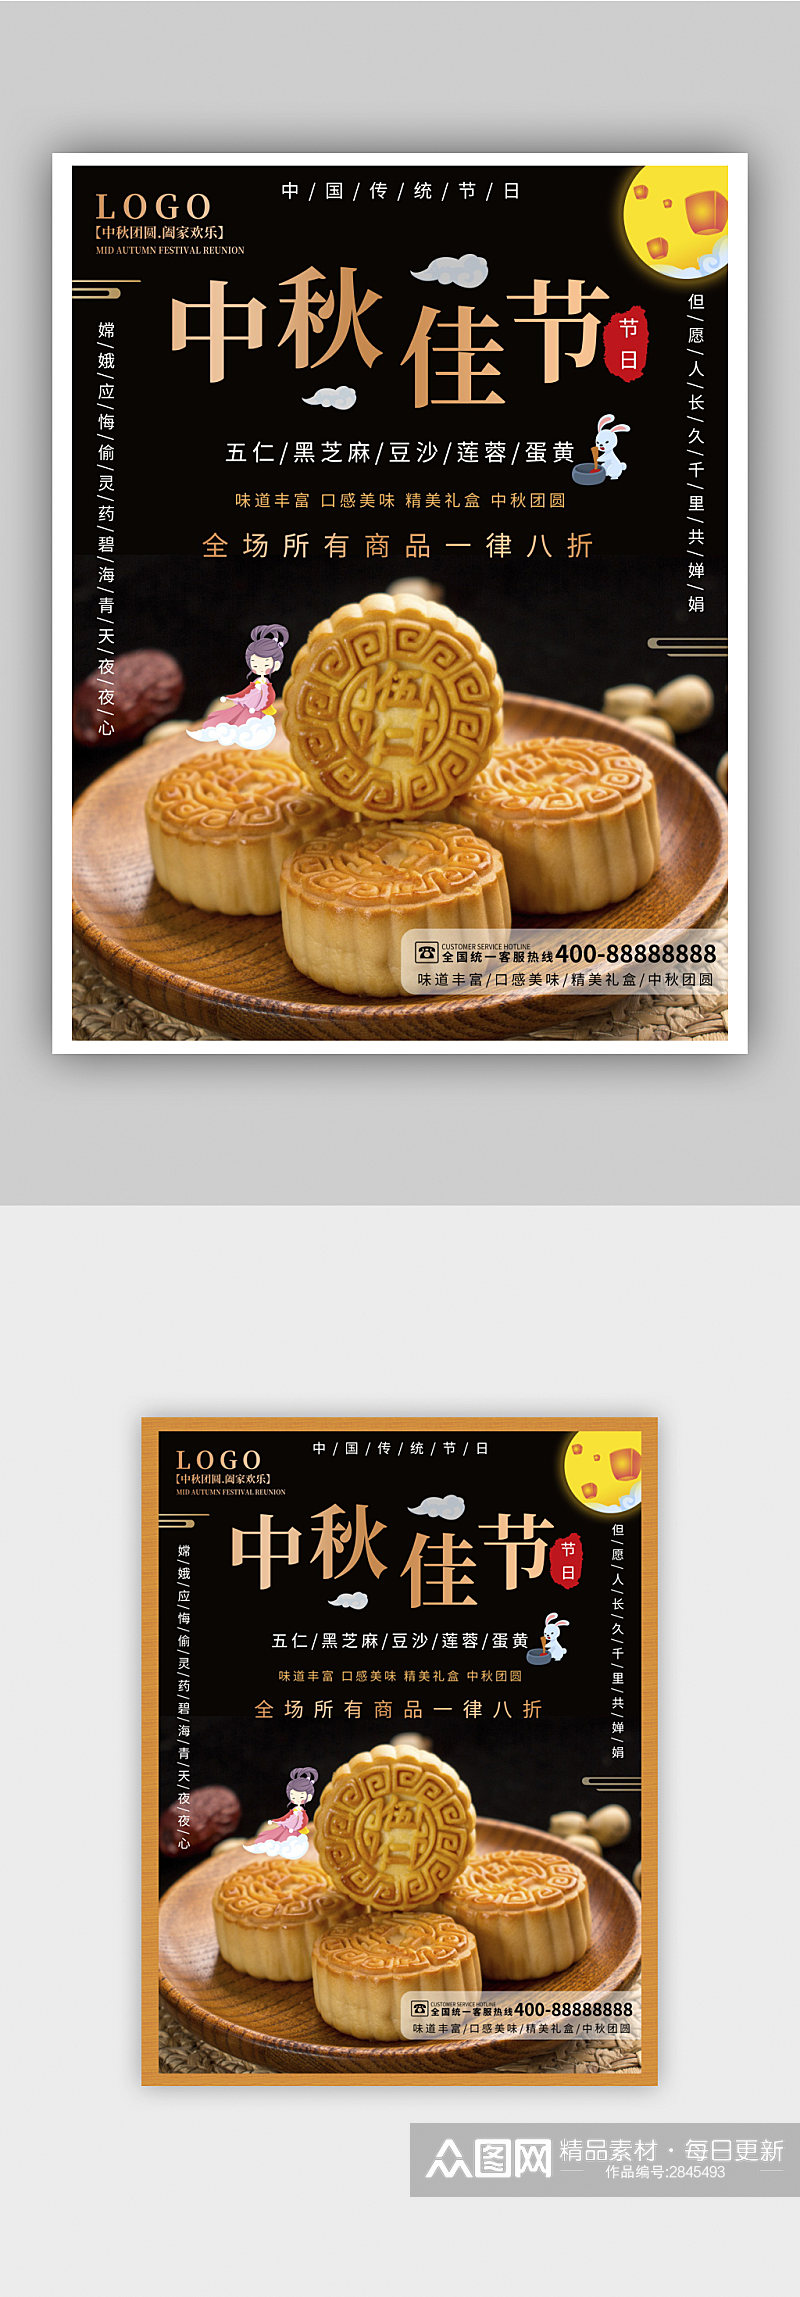 简约大气中国风中秋月饼在线预定促销海报素材